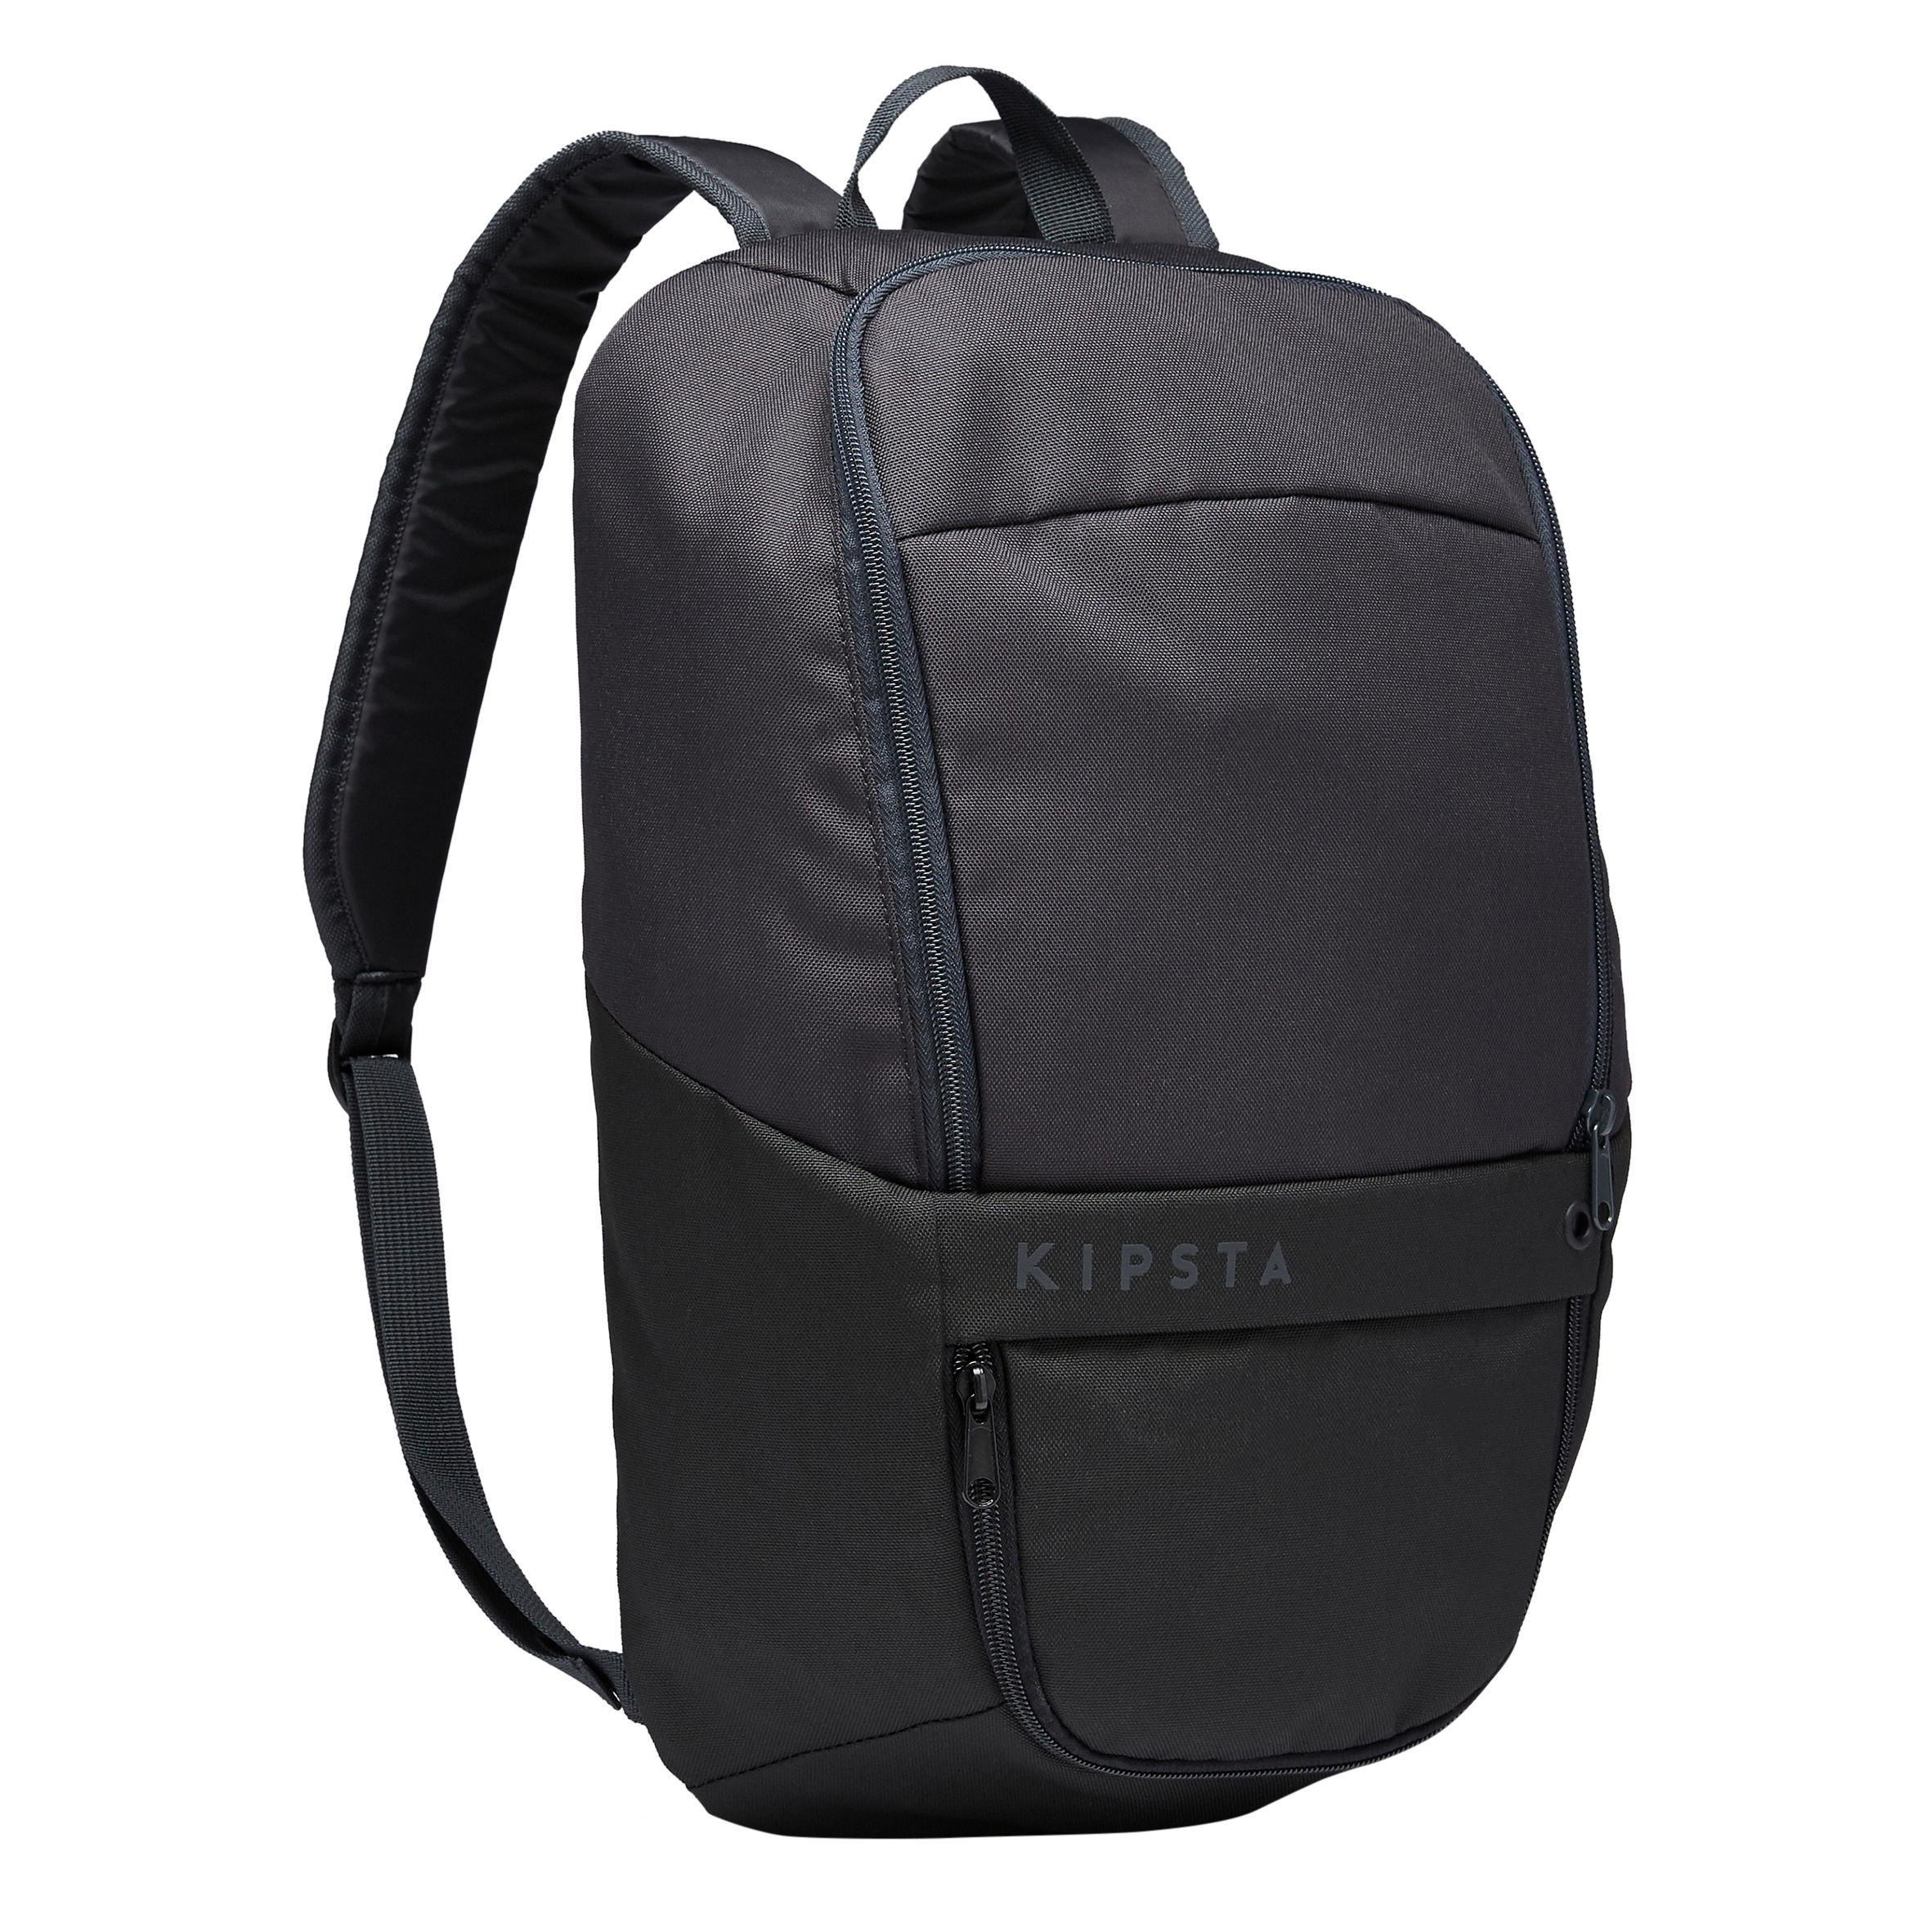 KIPSTA ULPP 17-Litre Backpack - Black